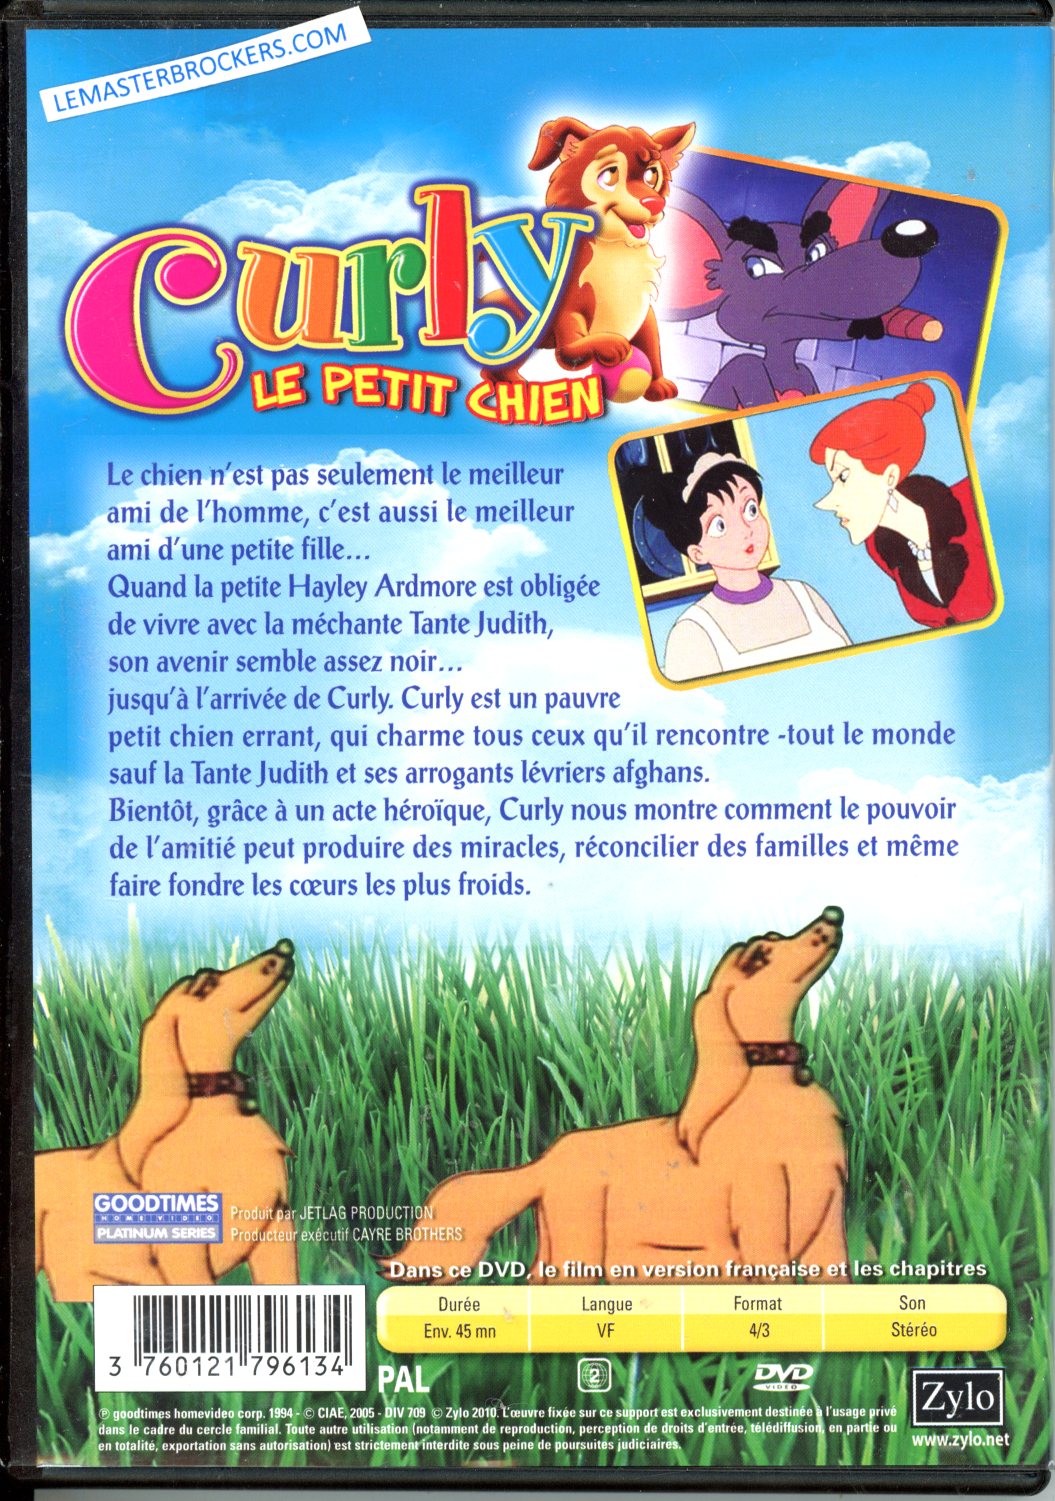 3760121796134 DVD CURLY LE PETIT CHIEN EN DVD